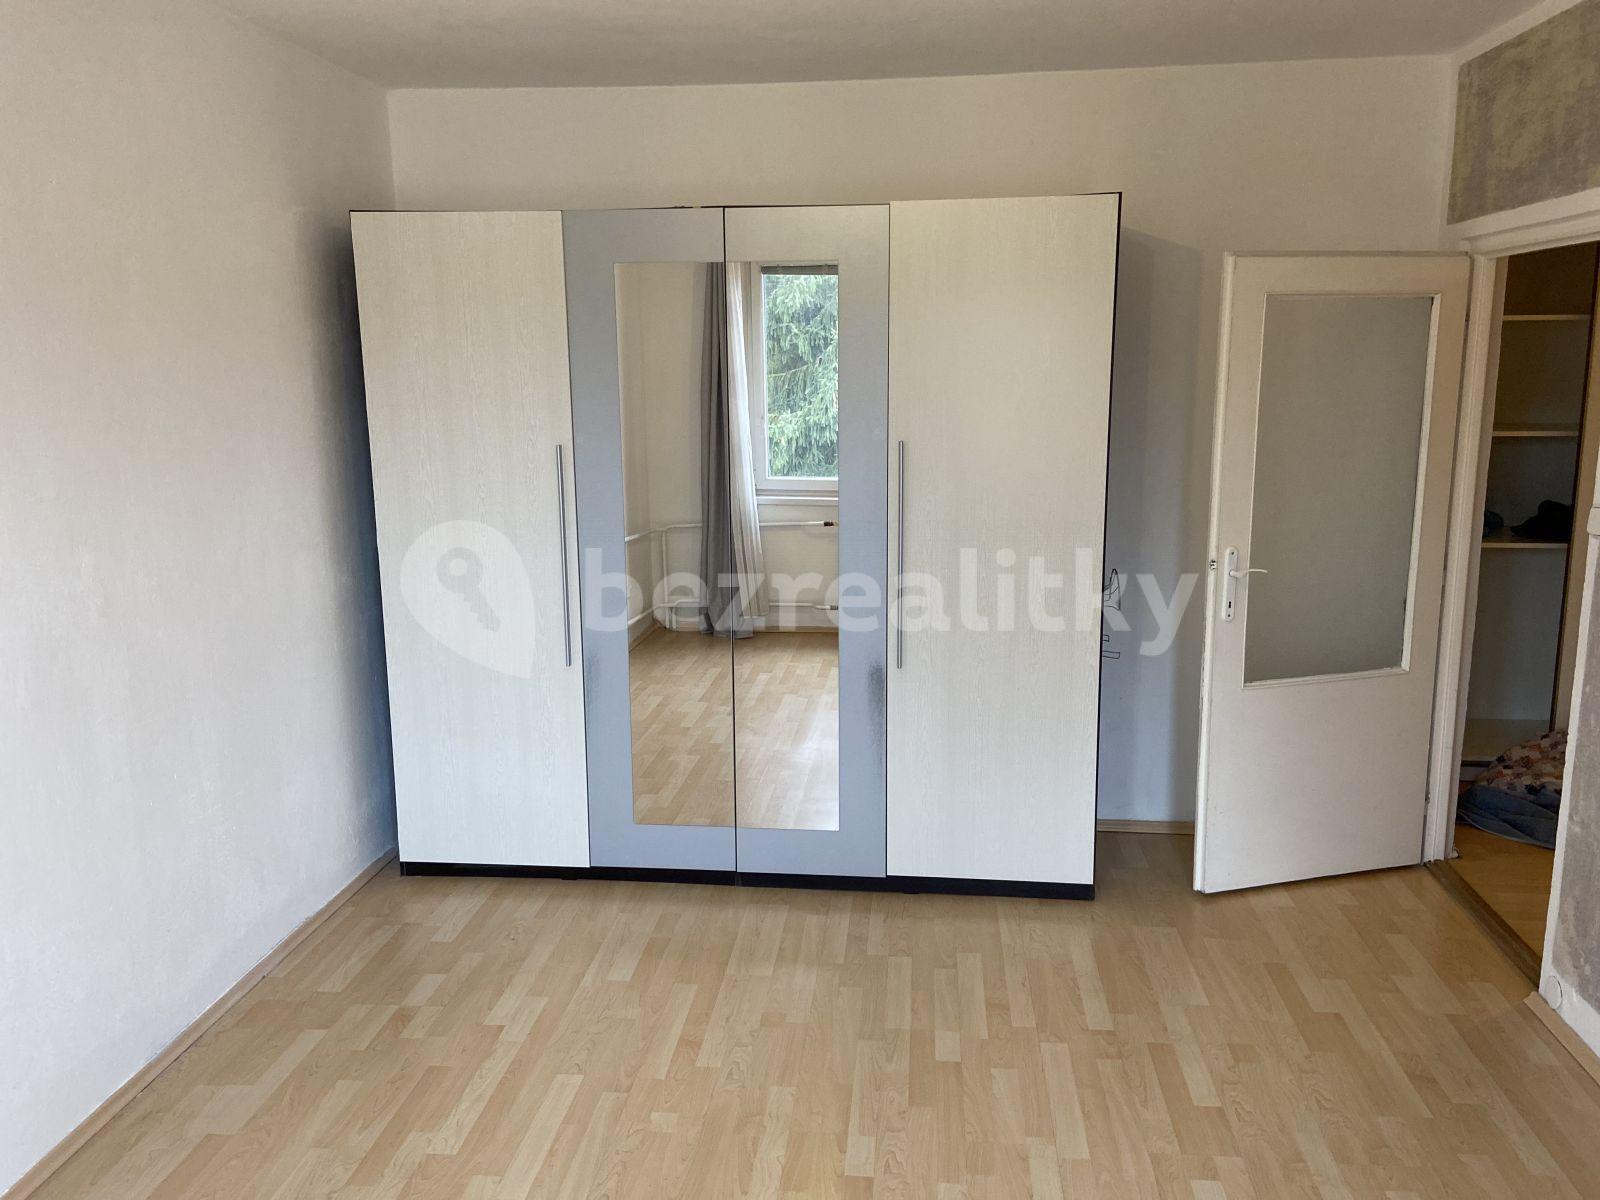 2 bedroom flat to rent, 52 m², Poříčí nad Sázavou, Středočeský Region